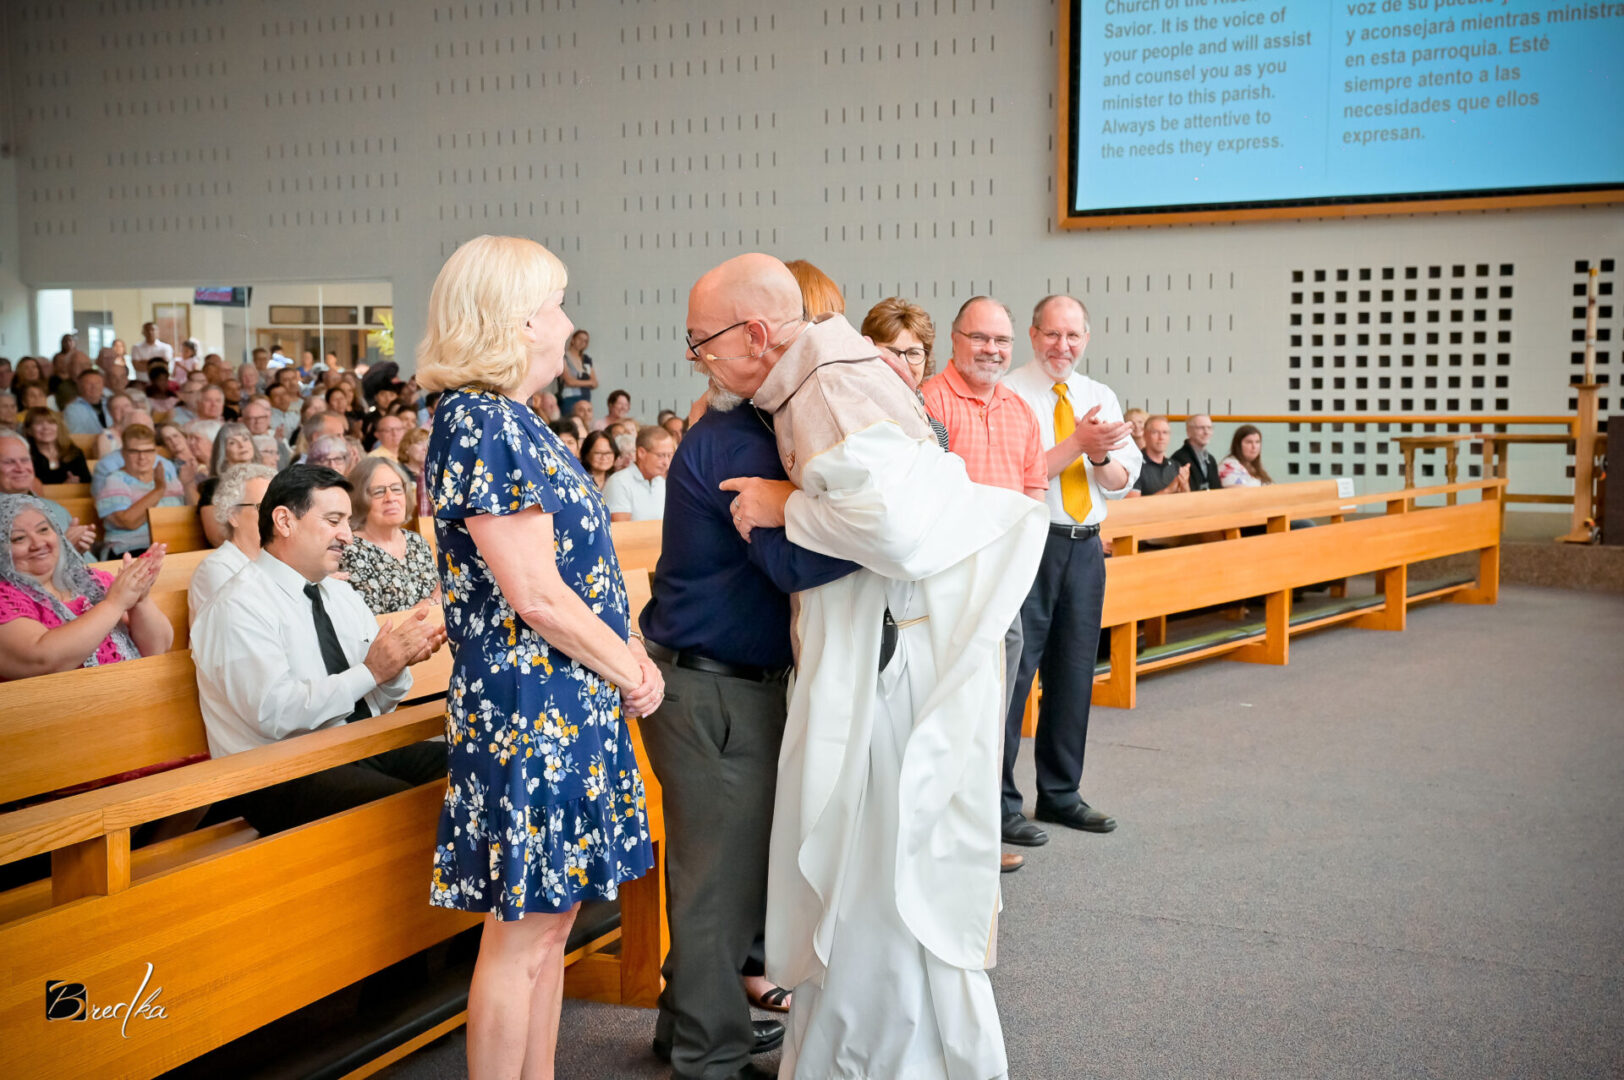 A man embraces a priest in a church.